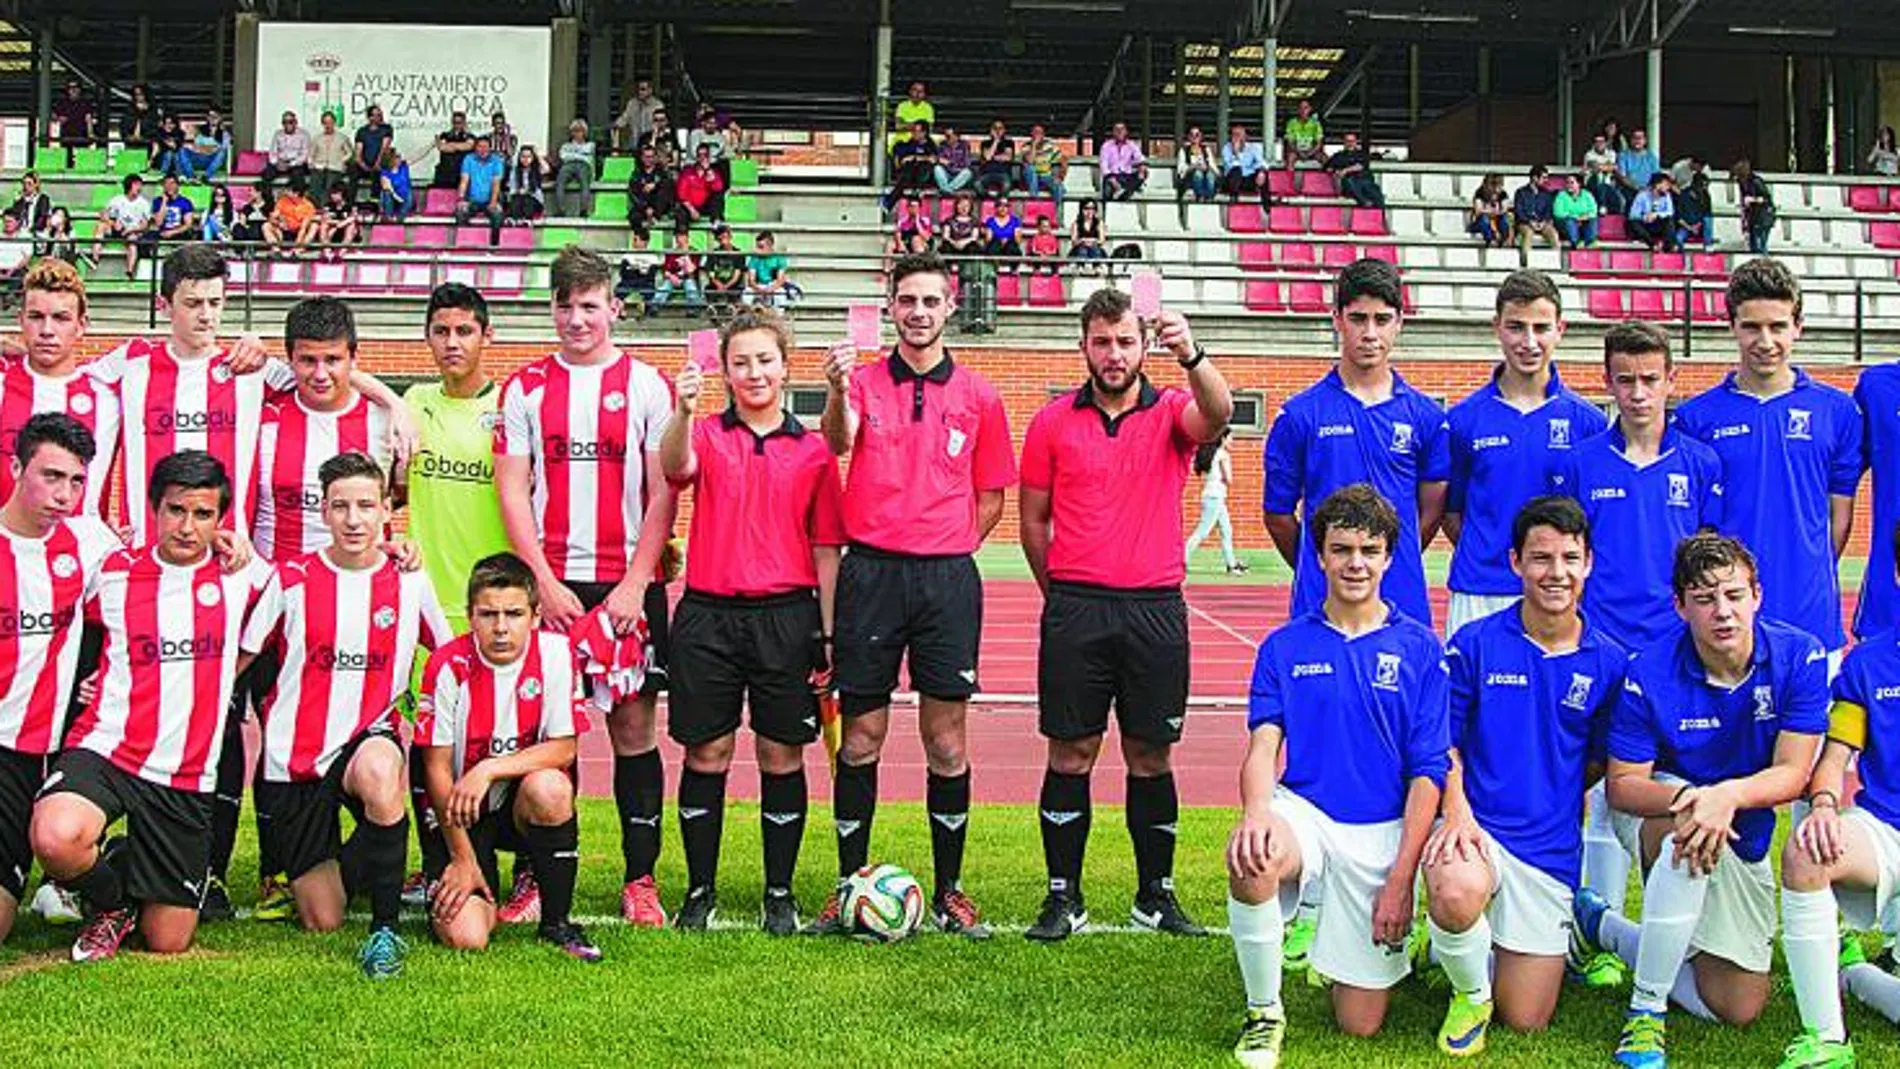 El árbitro de fútbol Jesús Tomillero (c), quien fue víctima de discriminación sexual, arbitró el partido de fútbol entre los cadetes del Zamora CF y el San Lorenzo, en Zamora.